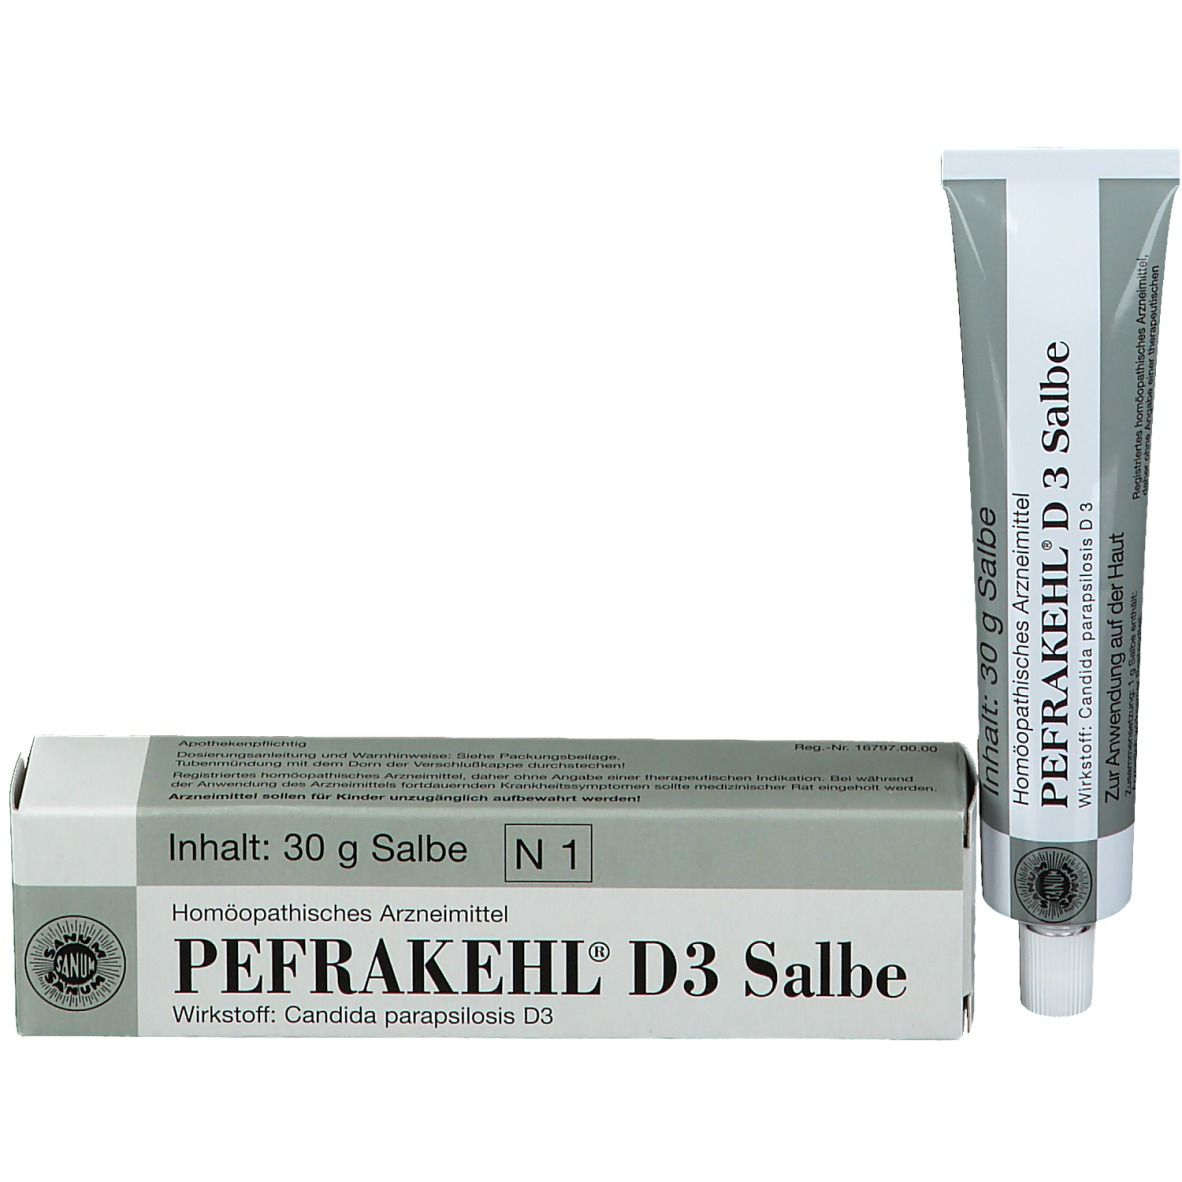 Pefrakehl® D3 Salbe